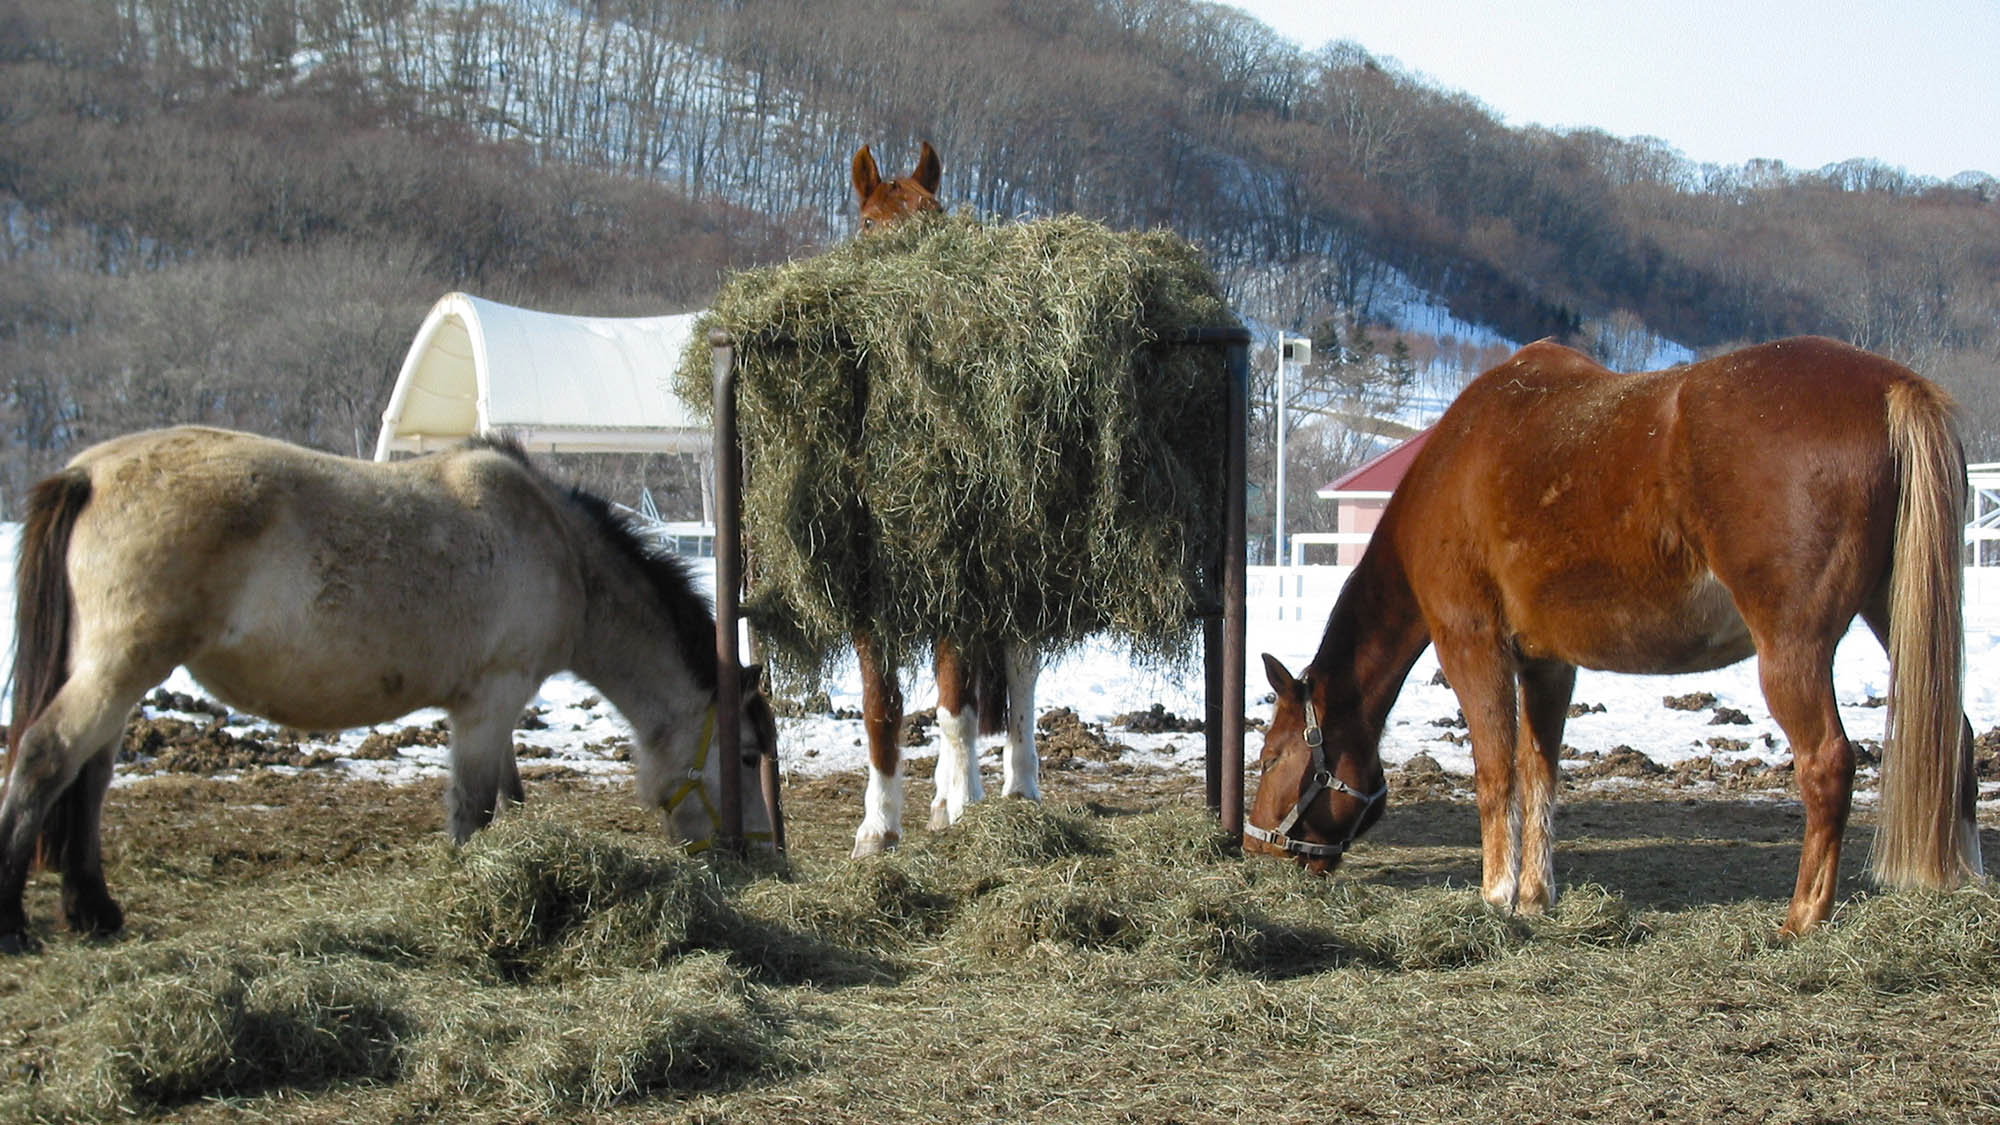 ・【AERUの馬たち】草をはみながらのんびりと。見ているだけで癒されます